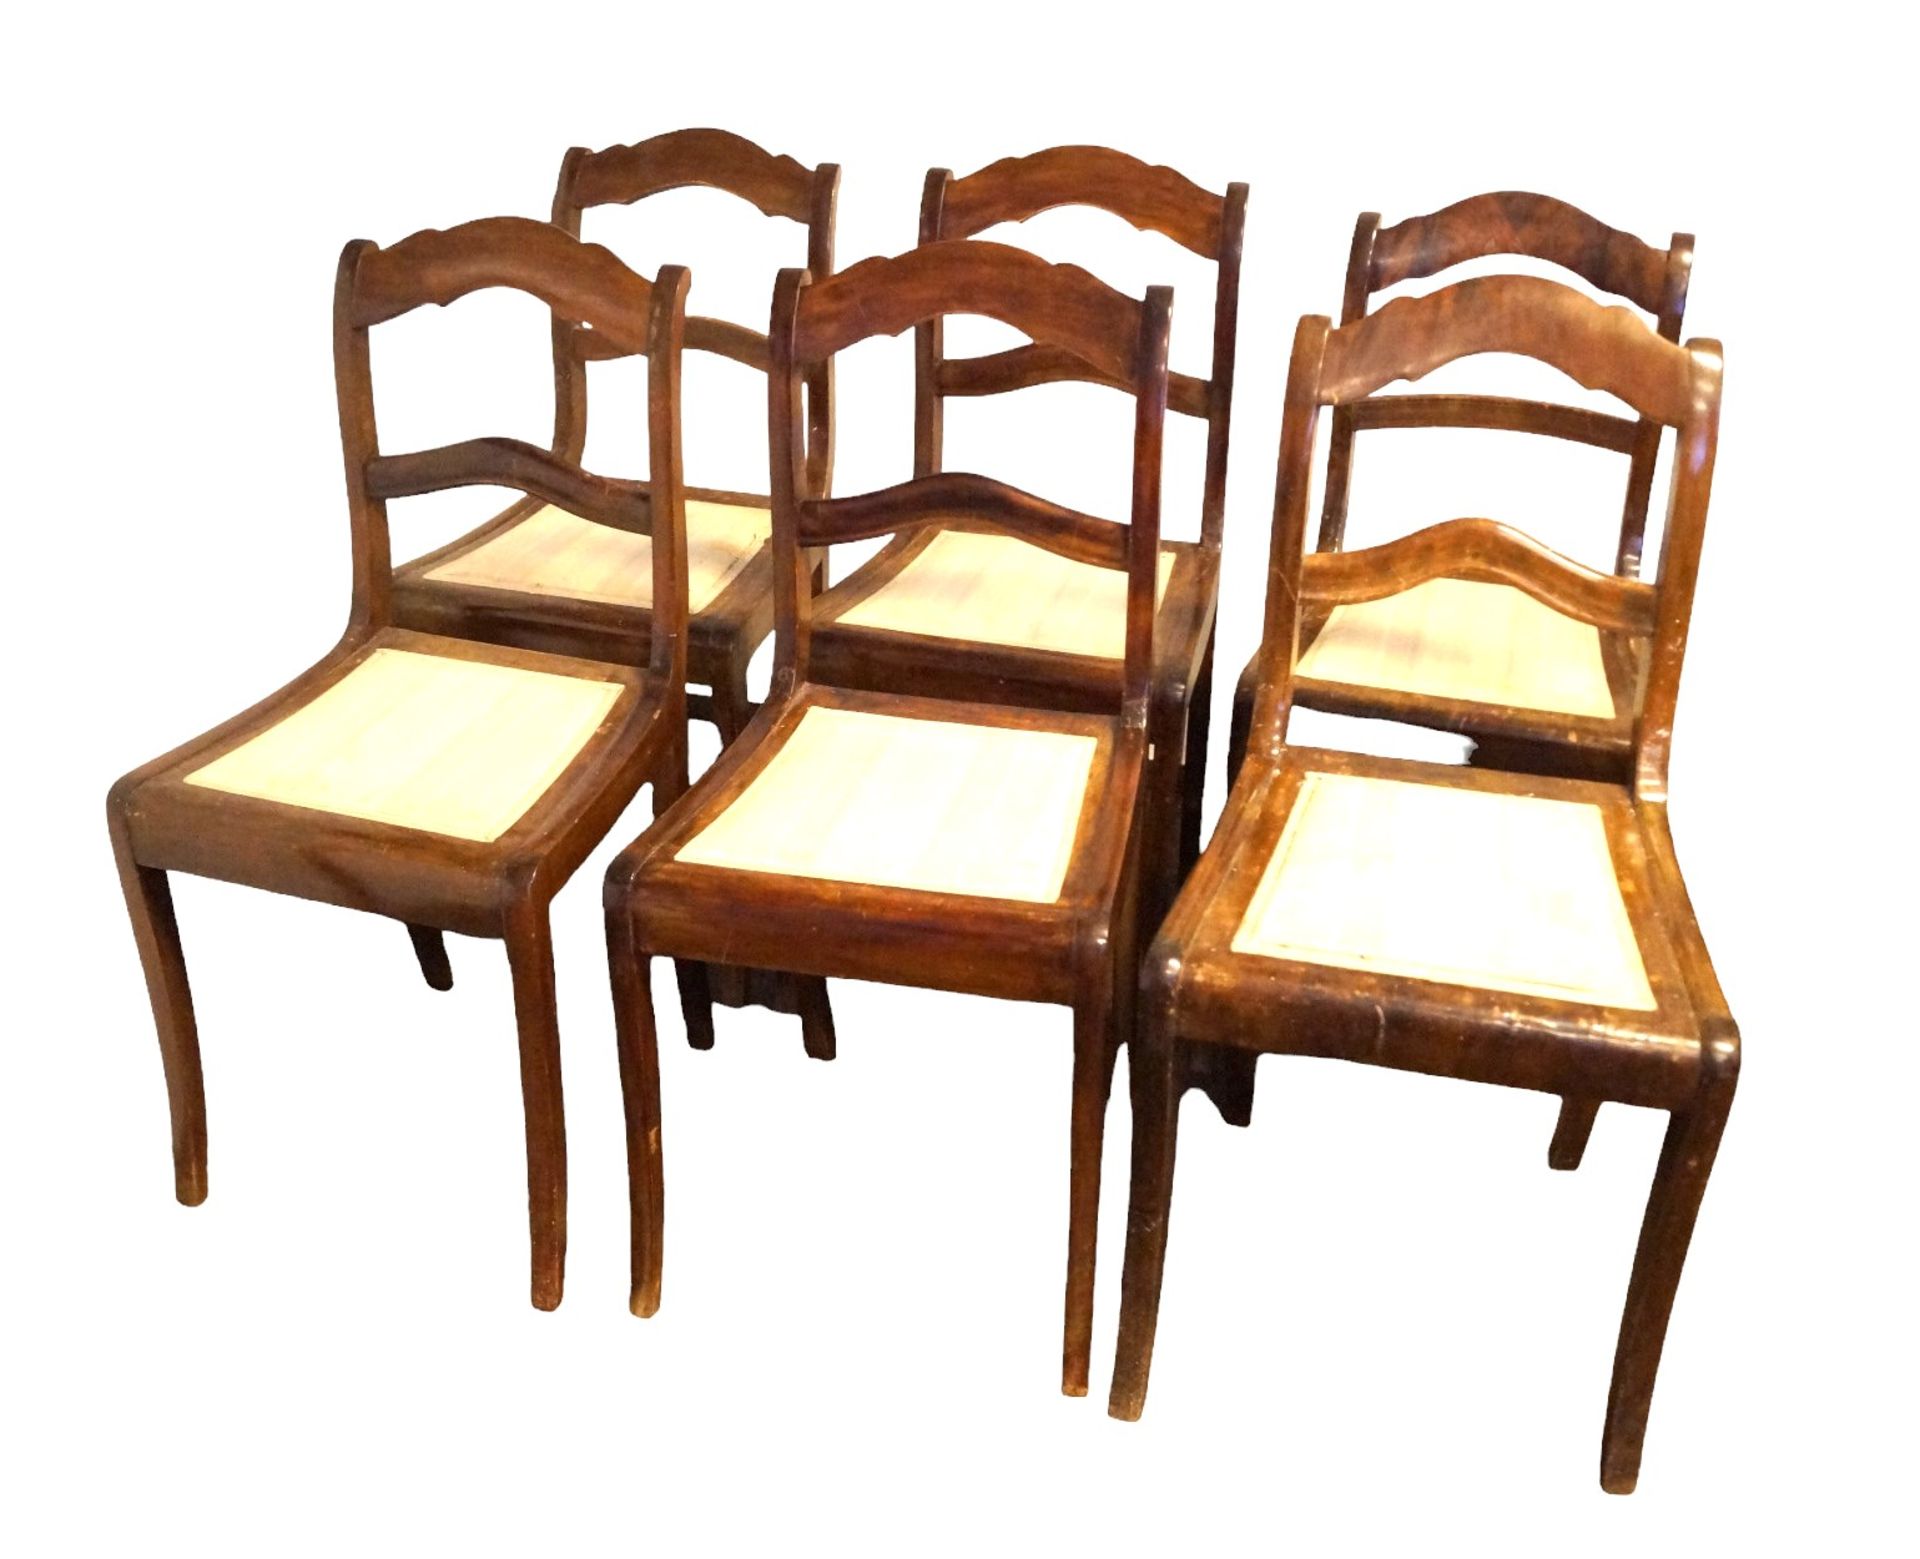 6 Stühle im Biedermeierstil; wohl um 1890; Nussbaum, teilmassiv; Sitzflächen gepolstert und überwie - Bild 2 aus 4